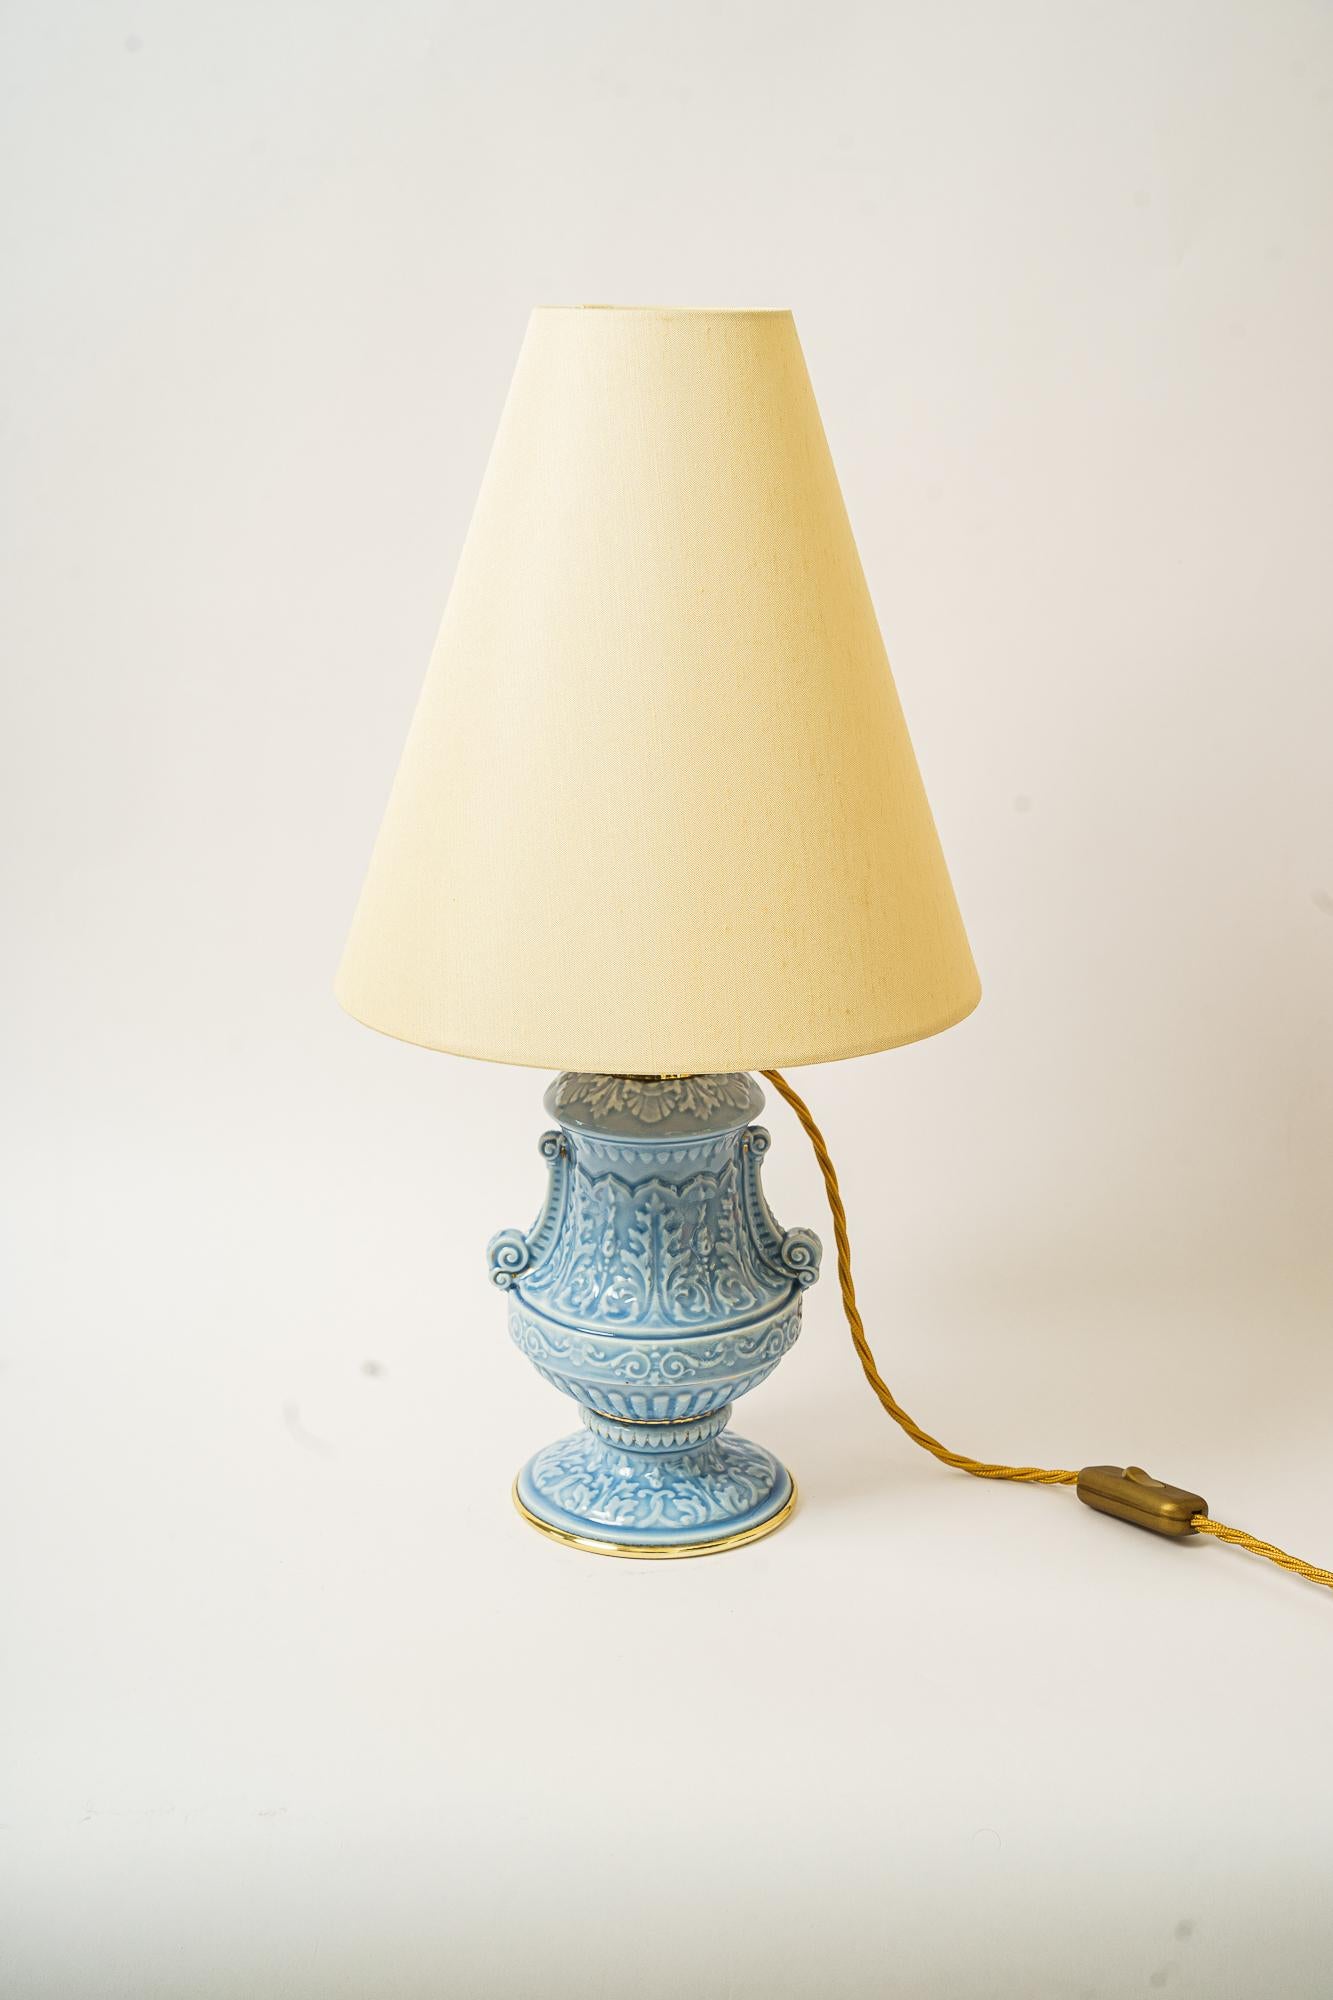 Art Deco Lampe de table en céramique avec abat-jour en tissu vienne vers les années 1930
Pièces en laiton polies et émaillées au four
La céramique est dans son état d'origine.
L'abat-jour en tissu est remplacé (neuf).